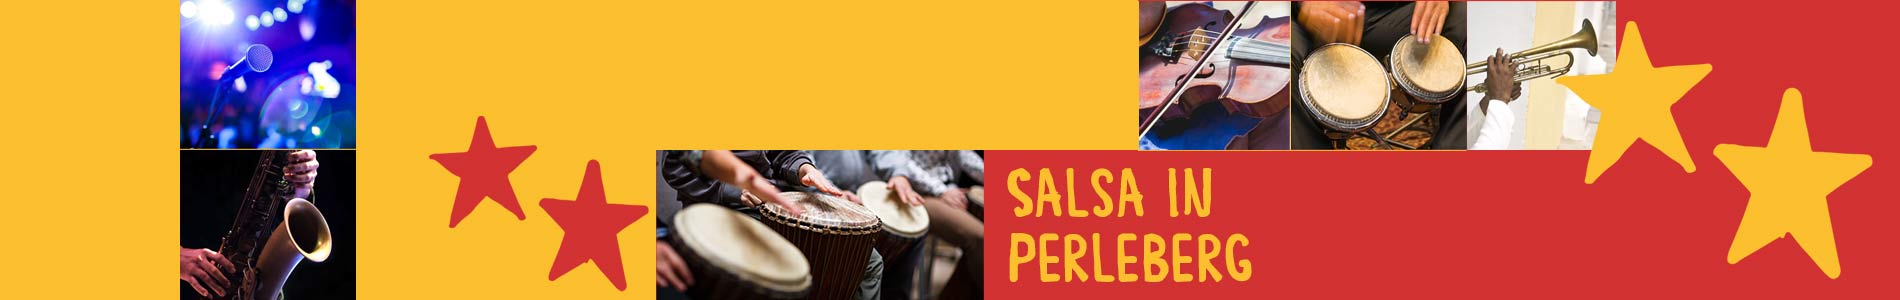 Salsa in Perleberg – Salsa lernen und tanzen, Tanzkurse, Partys, Veranstaltungen